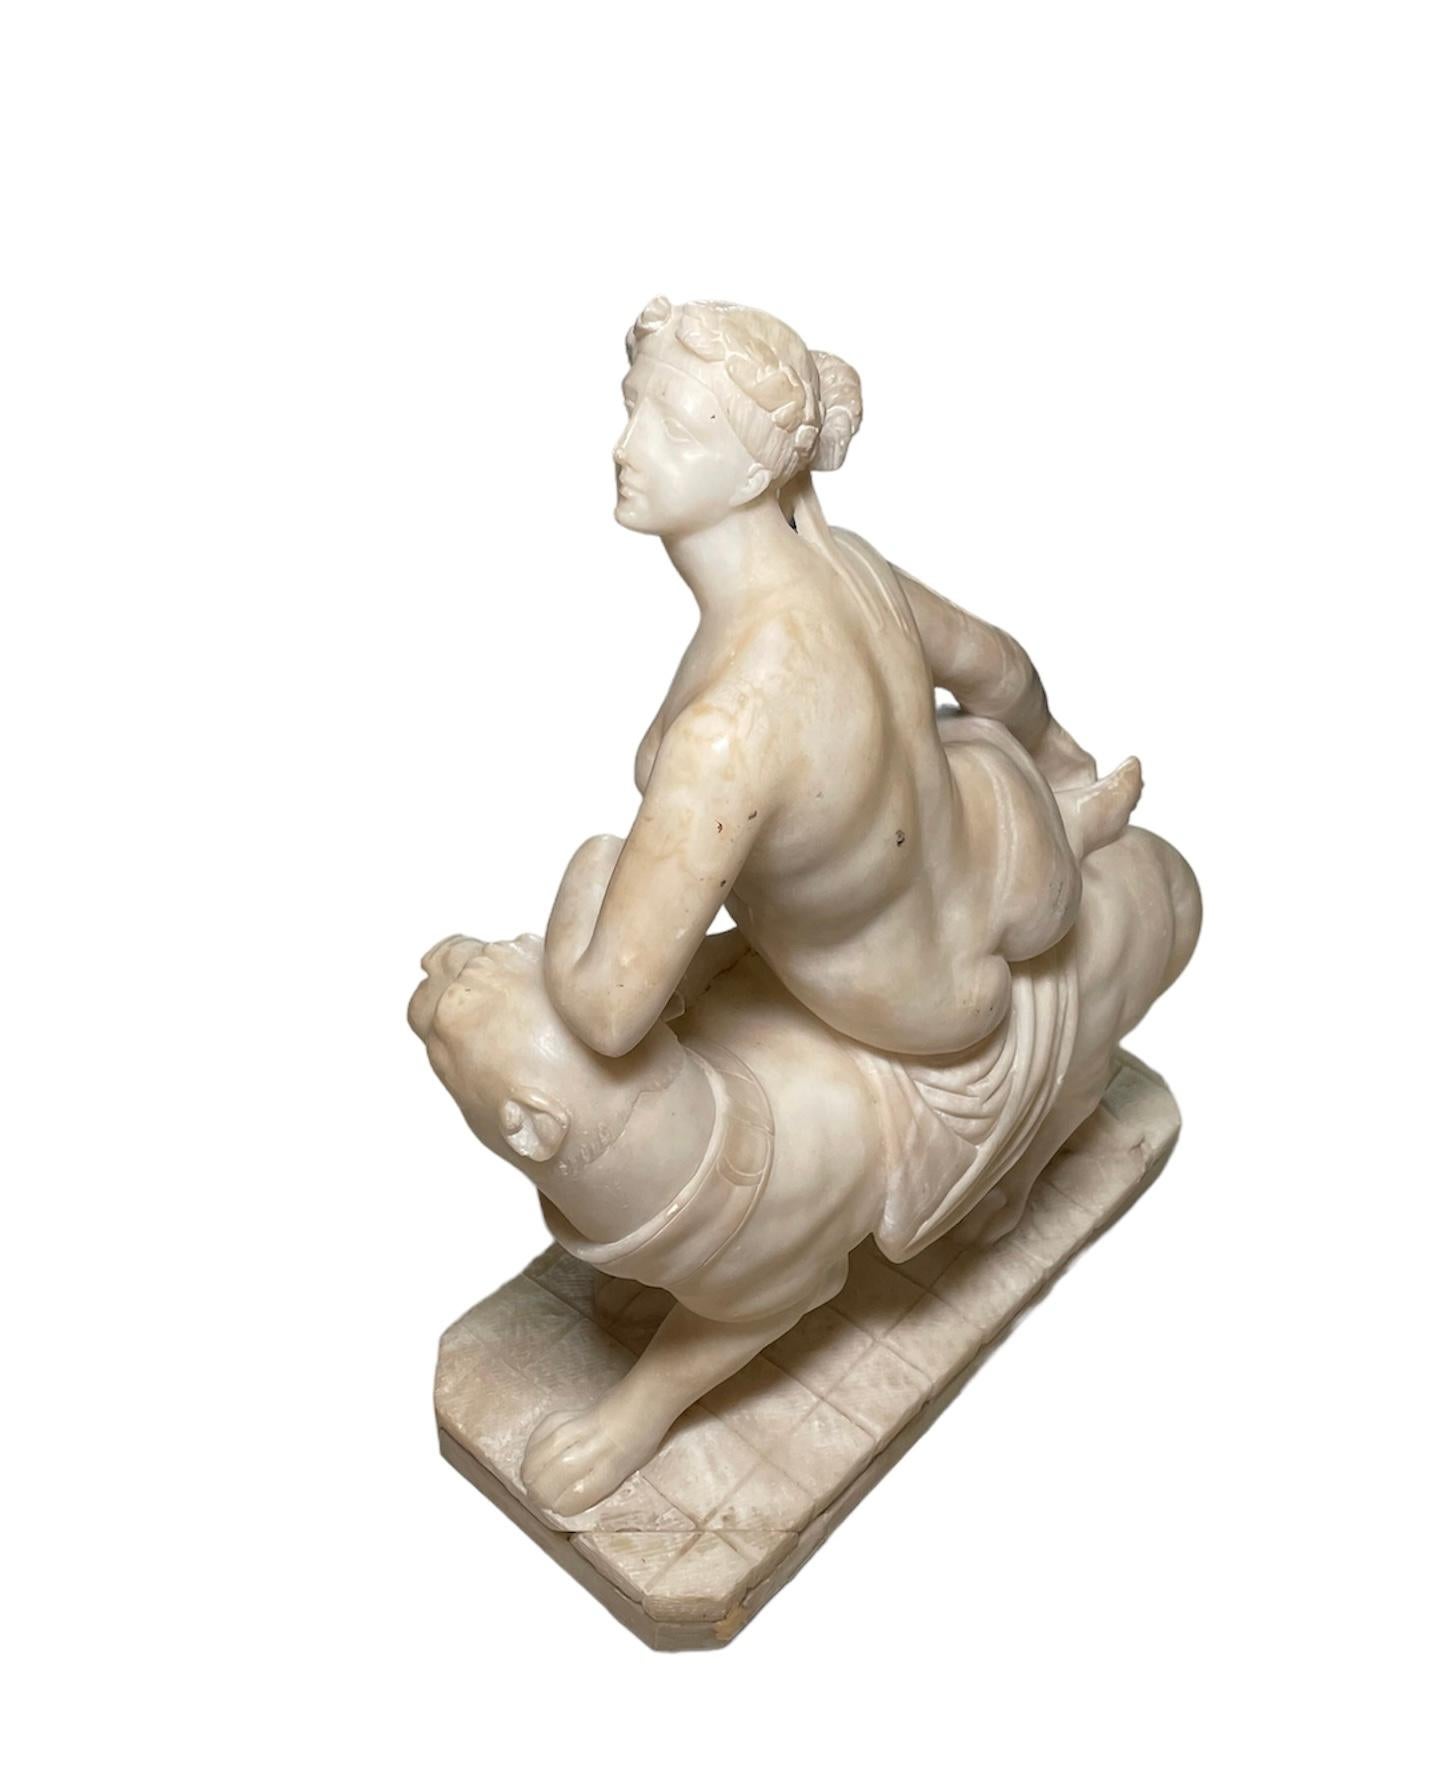 Il s'agit d'une sculpture de groupe en albâtre représentant la princesse crétoise et fille du roi Minos de Crète, Ariane, assise sur sa panthère. Son coude gauche est au-dessus de la tête de la panthère et son corps est incliné vers la gauche tandis